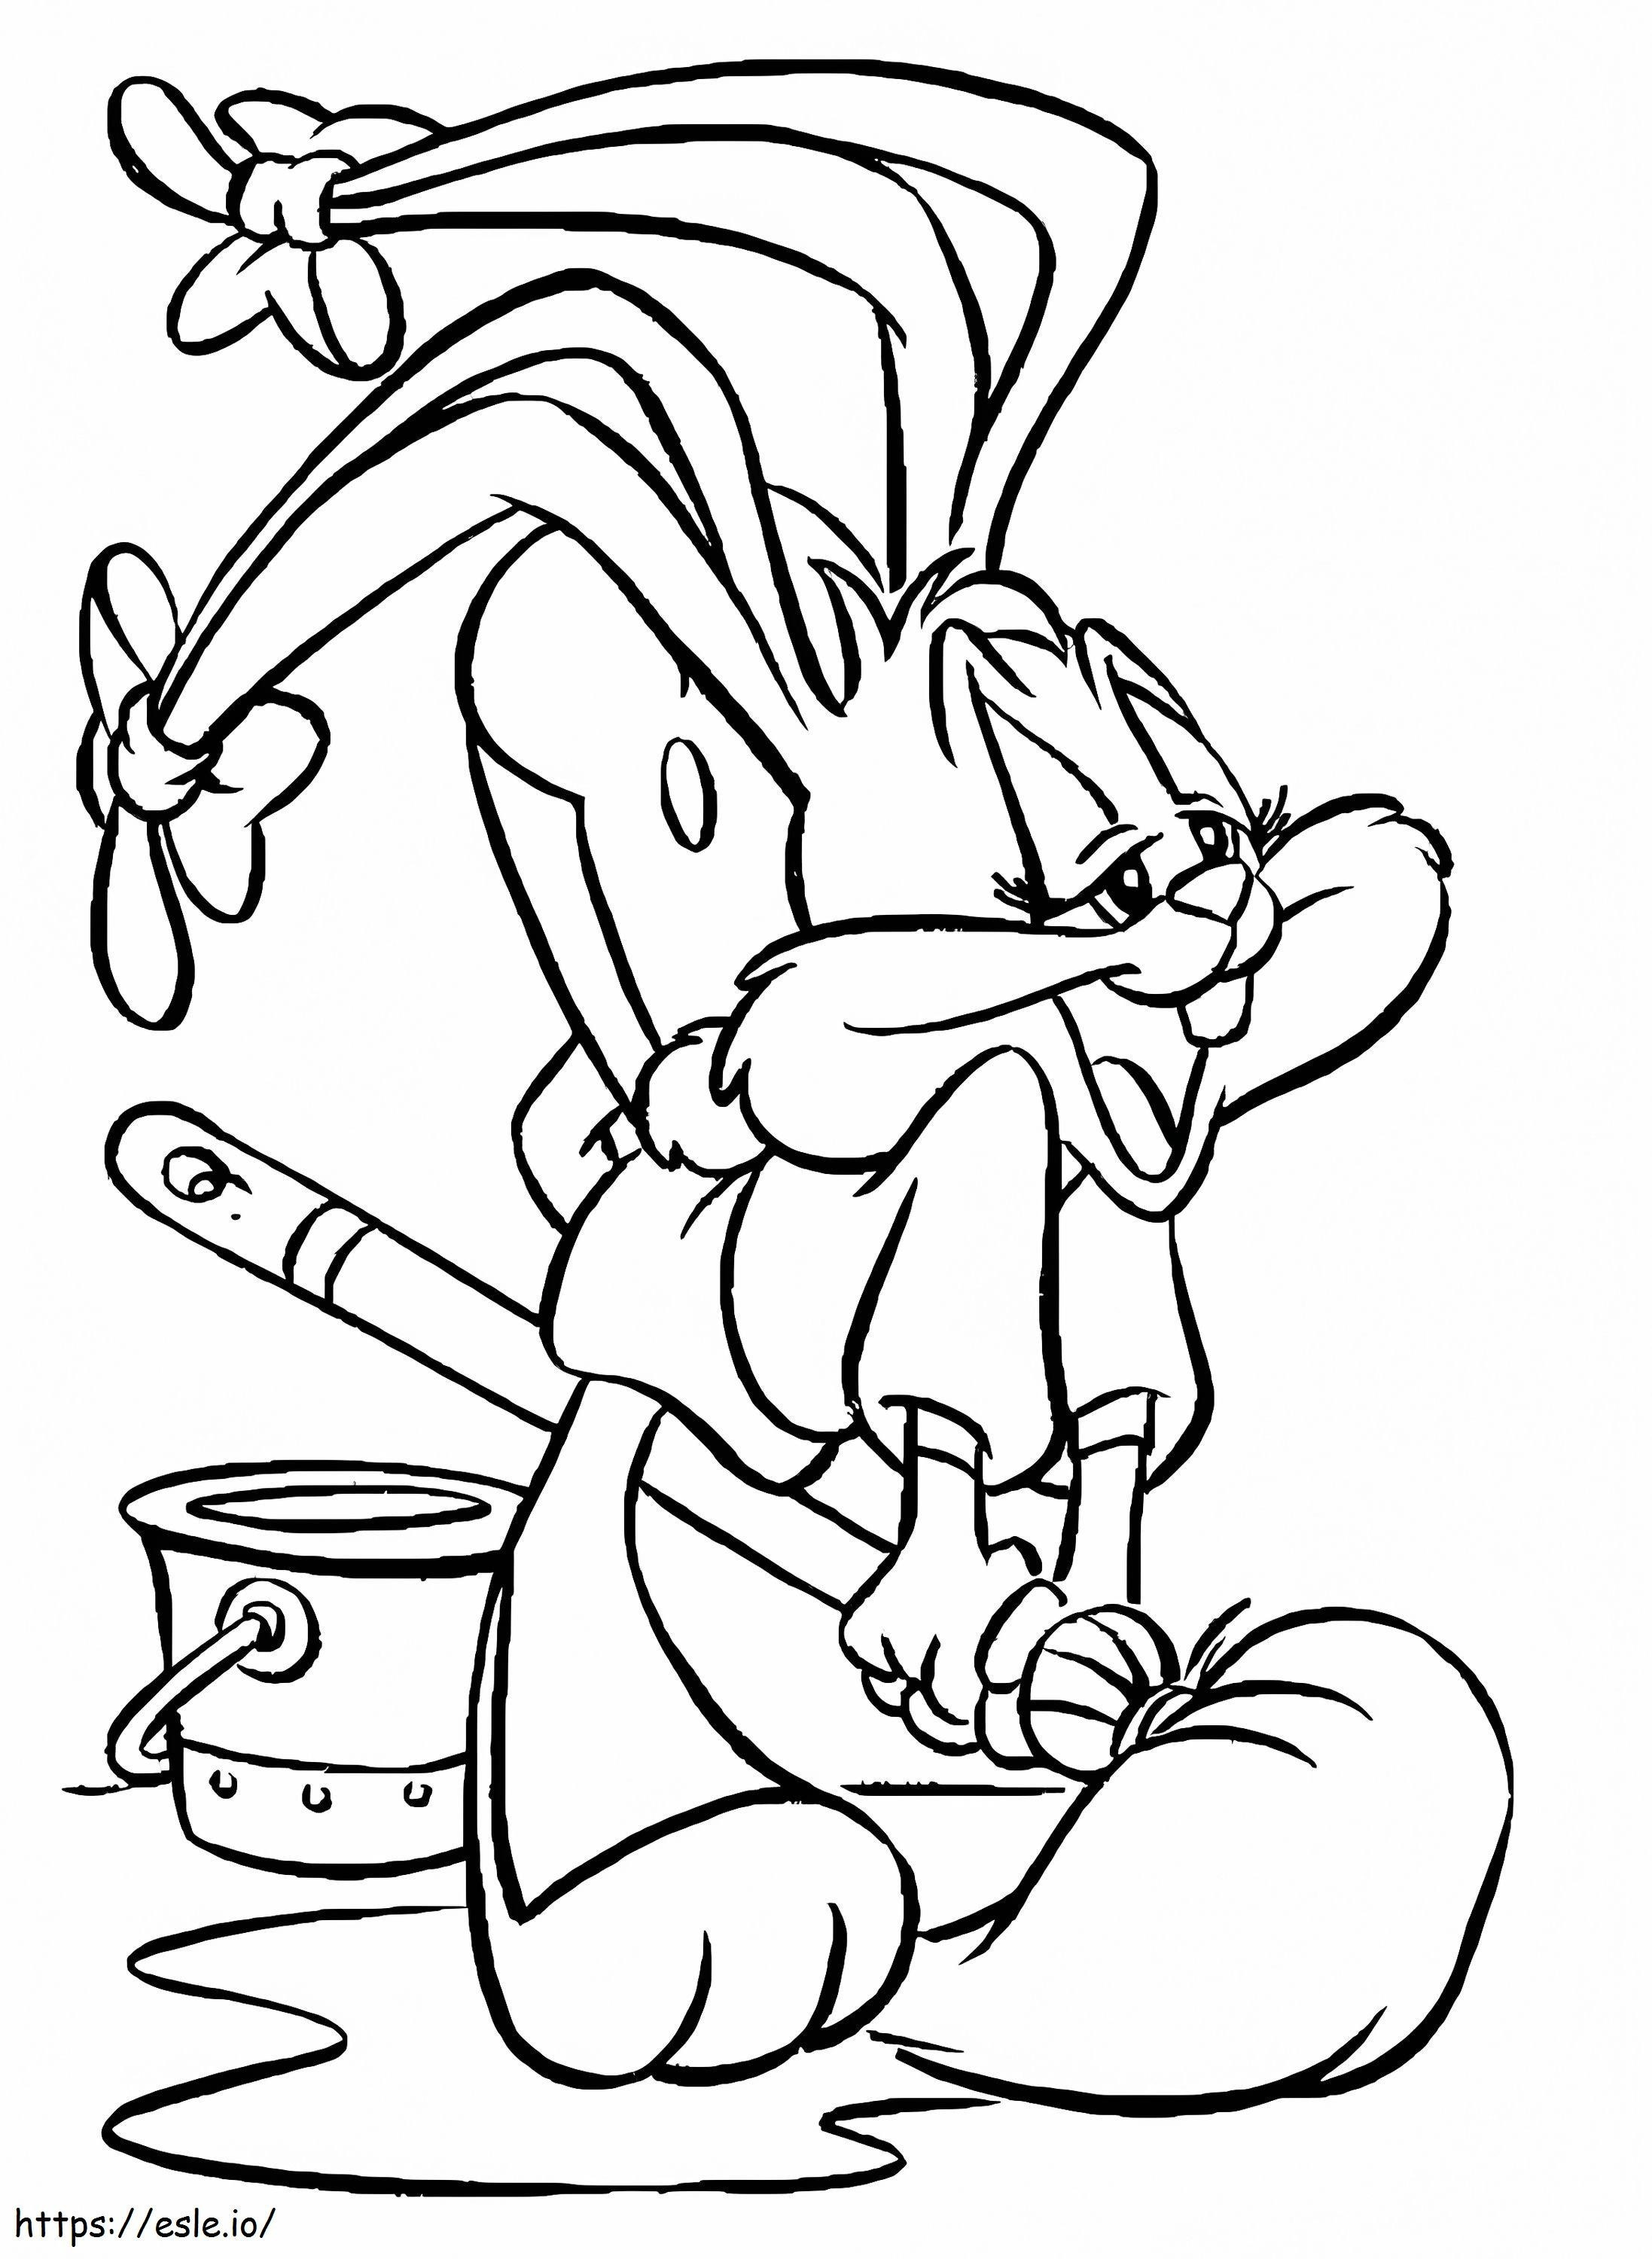 Babs Bunny uit Tiny Toon Adventures kleurplaat kleurplaat